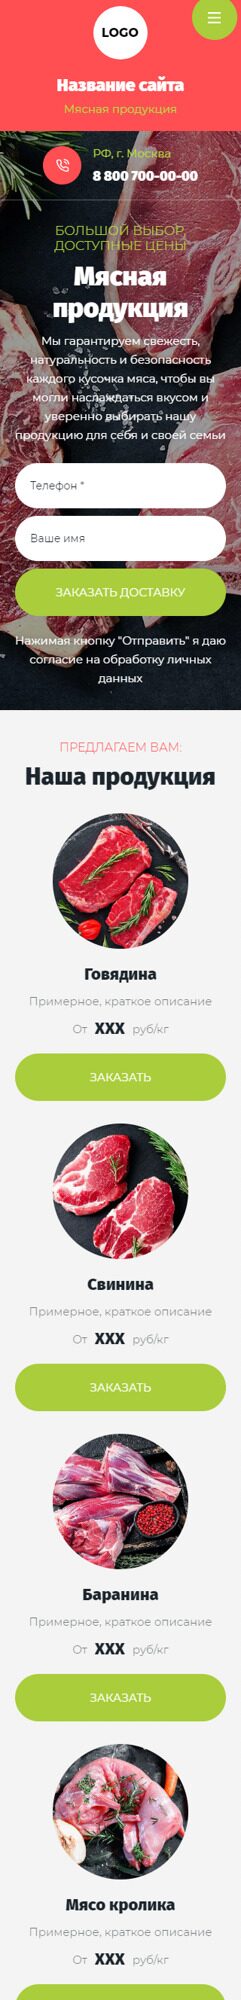 Готовый Сайт-Бизнес № 5203050 - Мясо и мясопродукты (Мобильная версия)